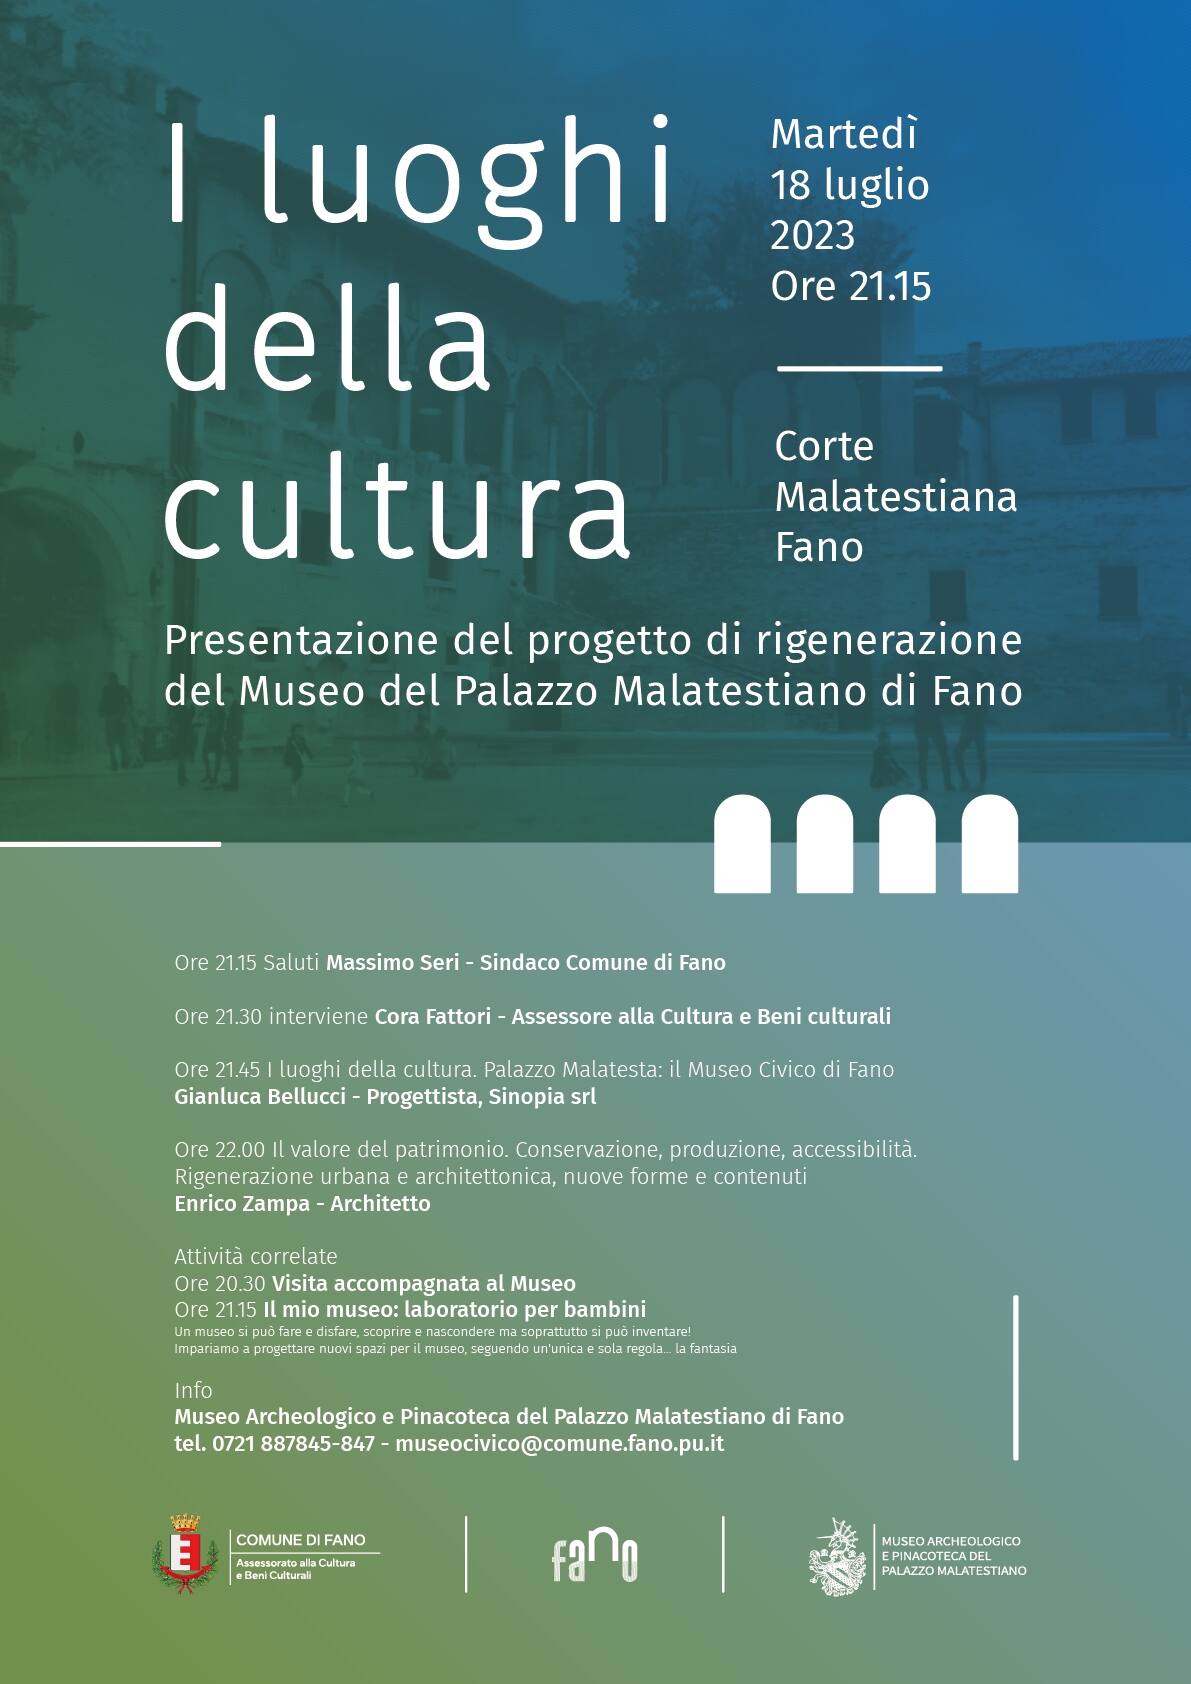 Martedì 18 luglio verrà presentato il progetto del nuovo museo del Palazzo Malatestiano